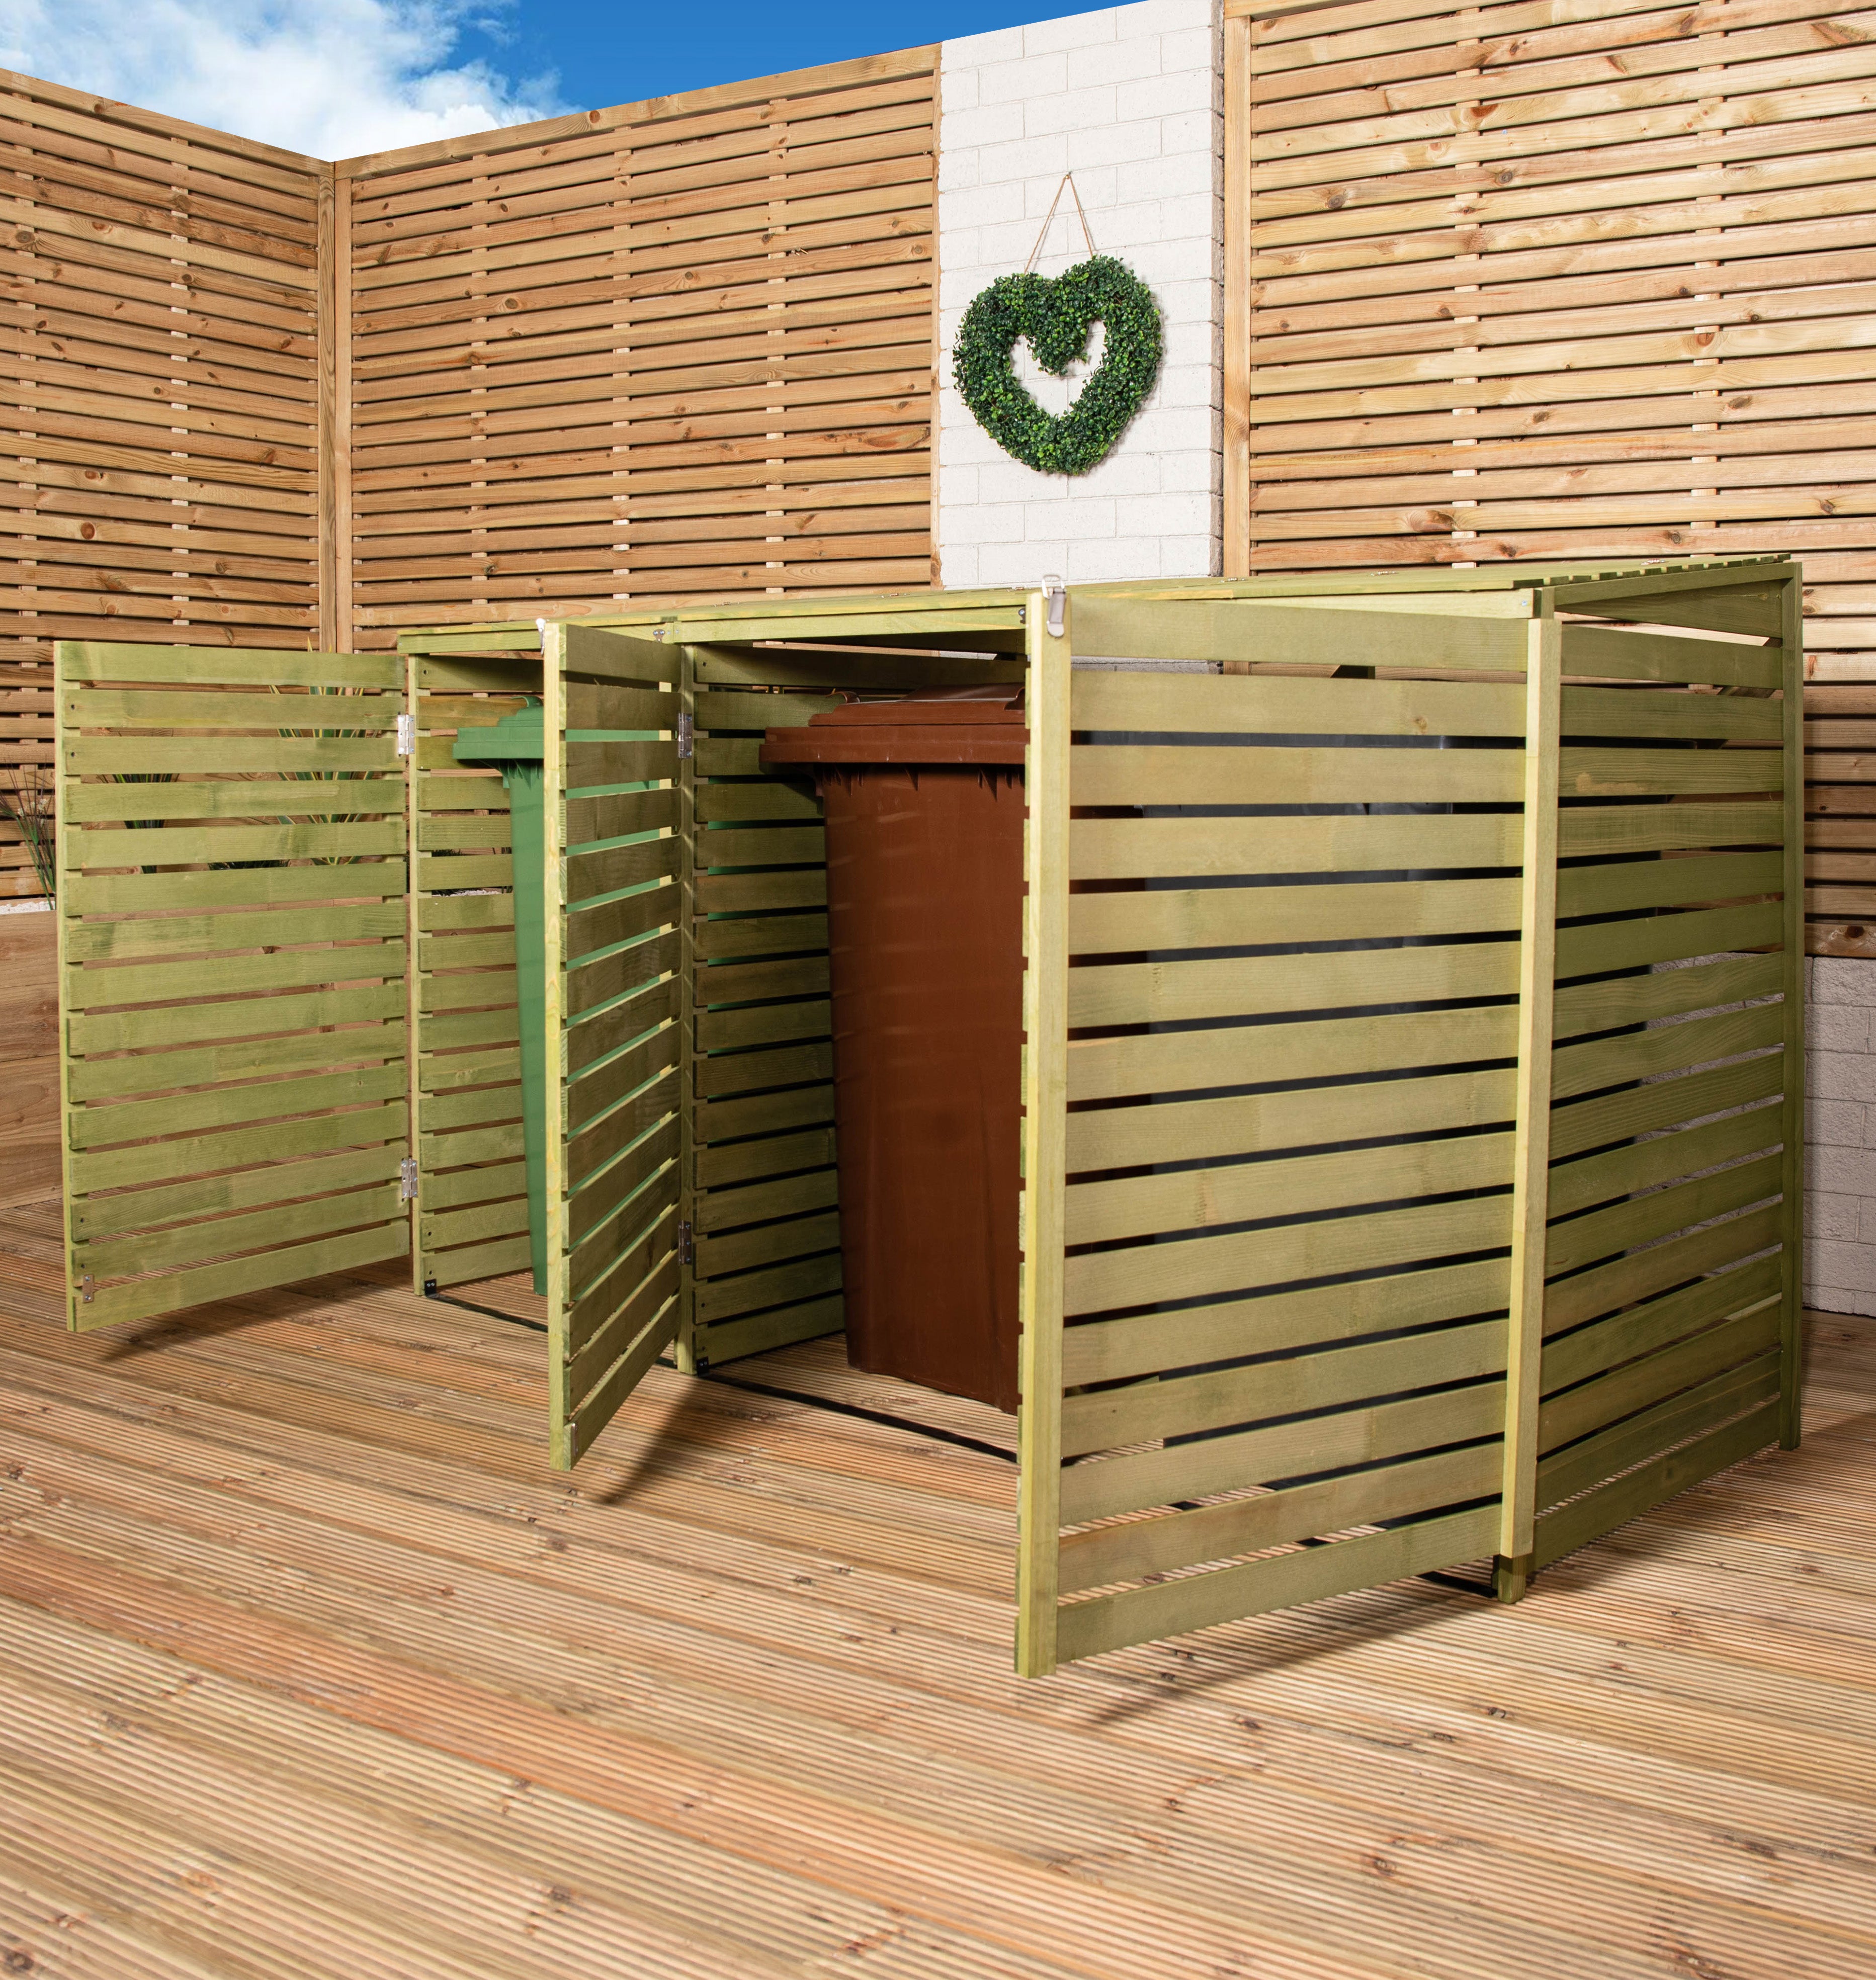 1.99m x 1.22m Large Wooden Outdoor Garden Triple Wheelie Bin Store Storage for 3 Bins